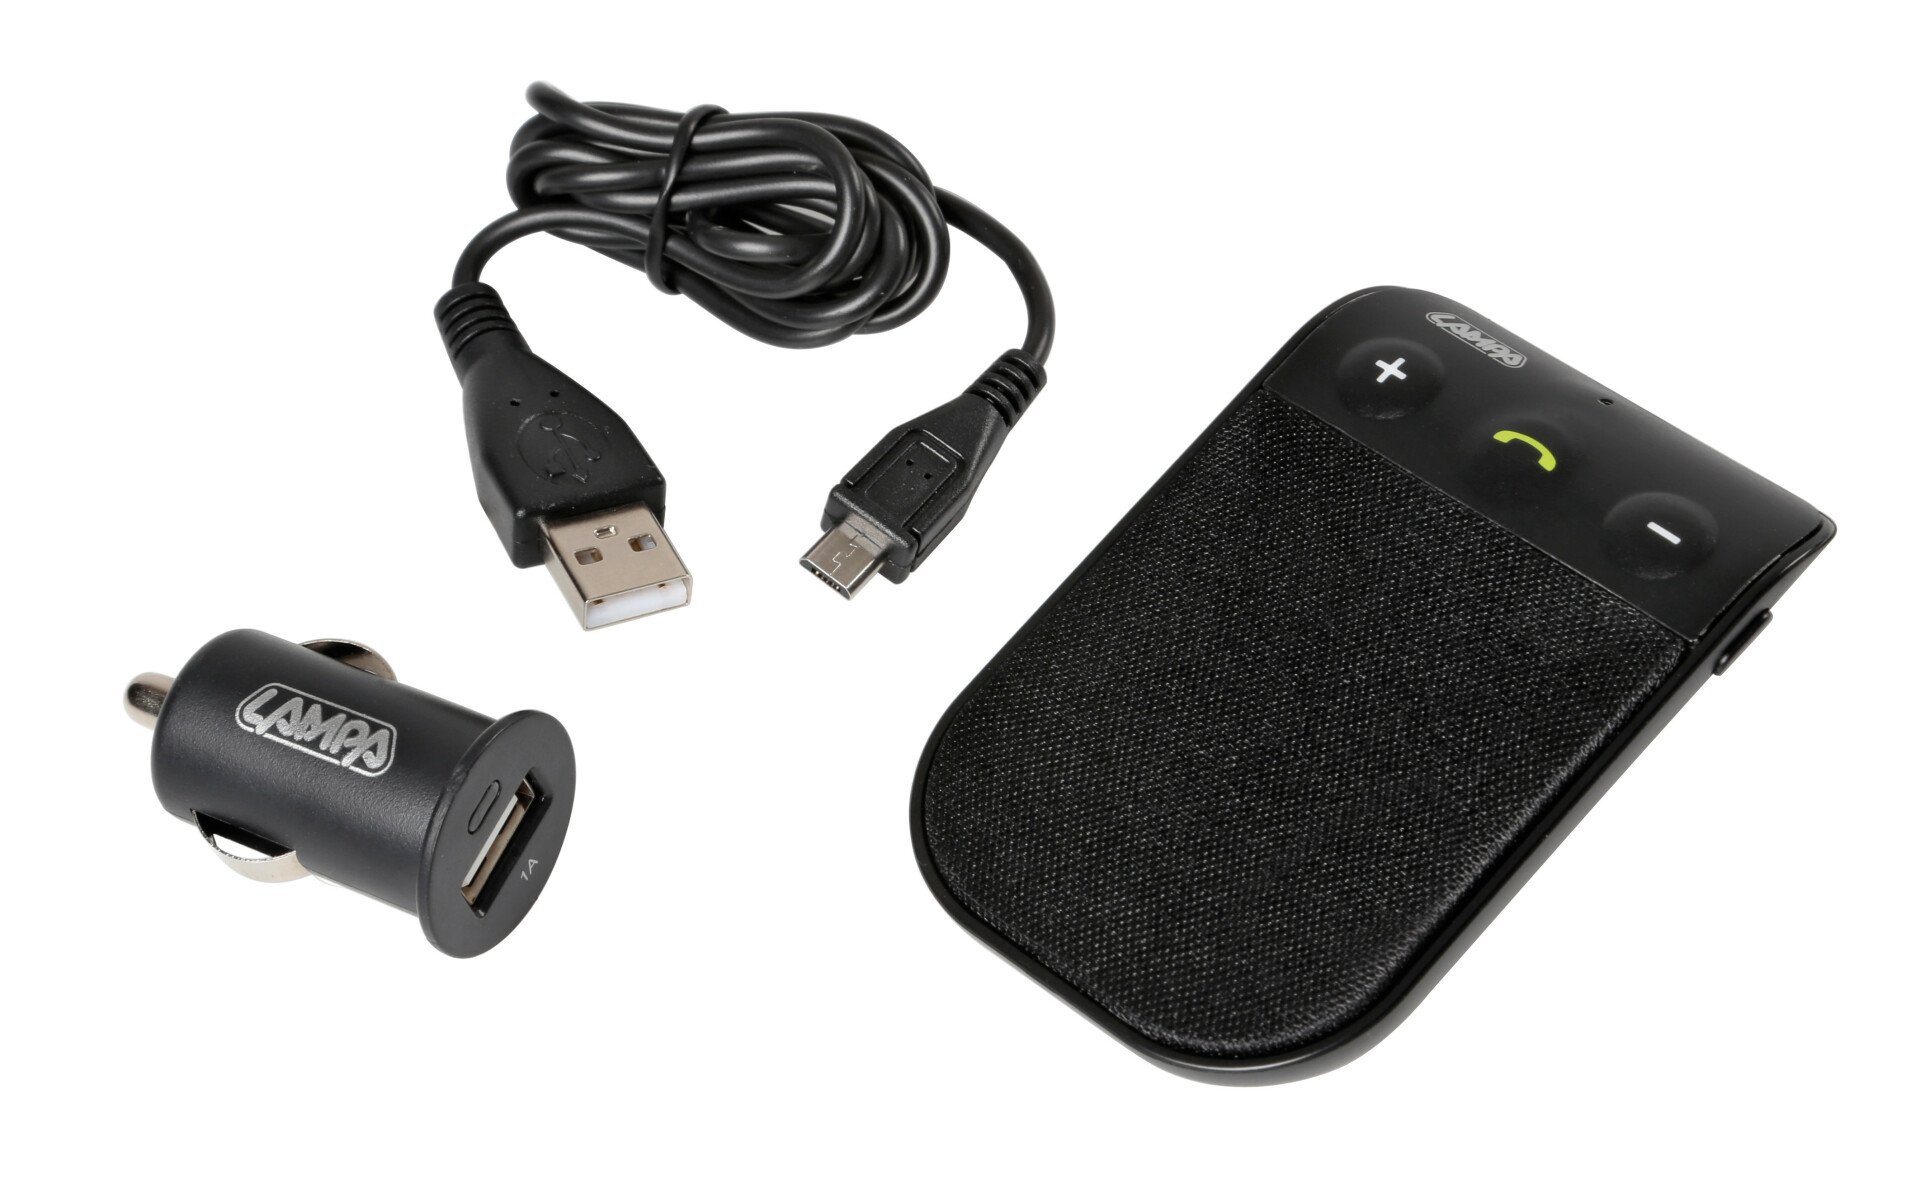 Car kit Bluetooth 4.0 hordozható, hangszóróval és akkumulátorral 10h thumb